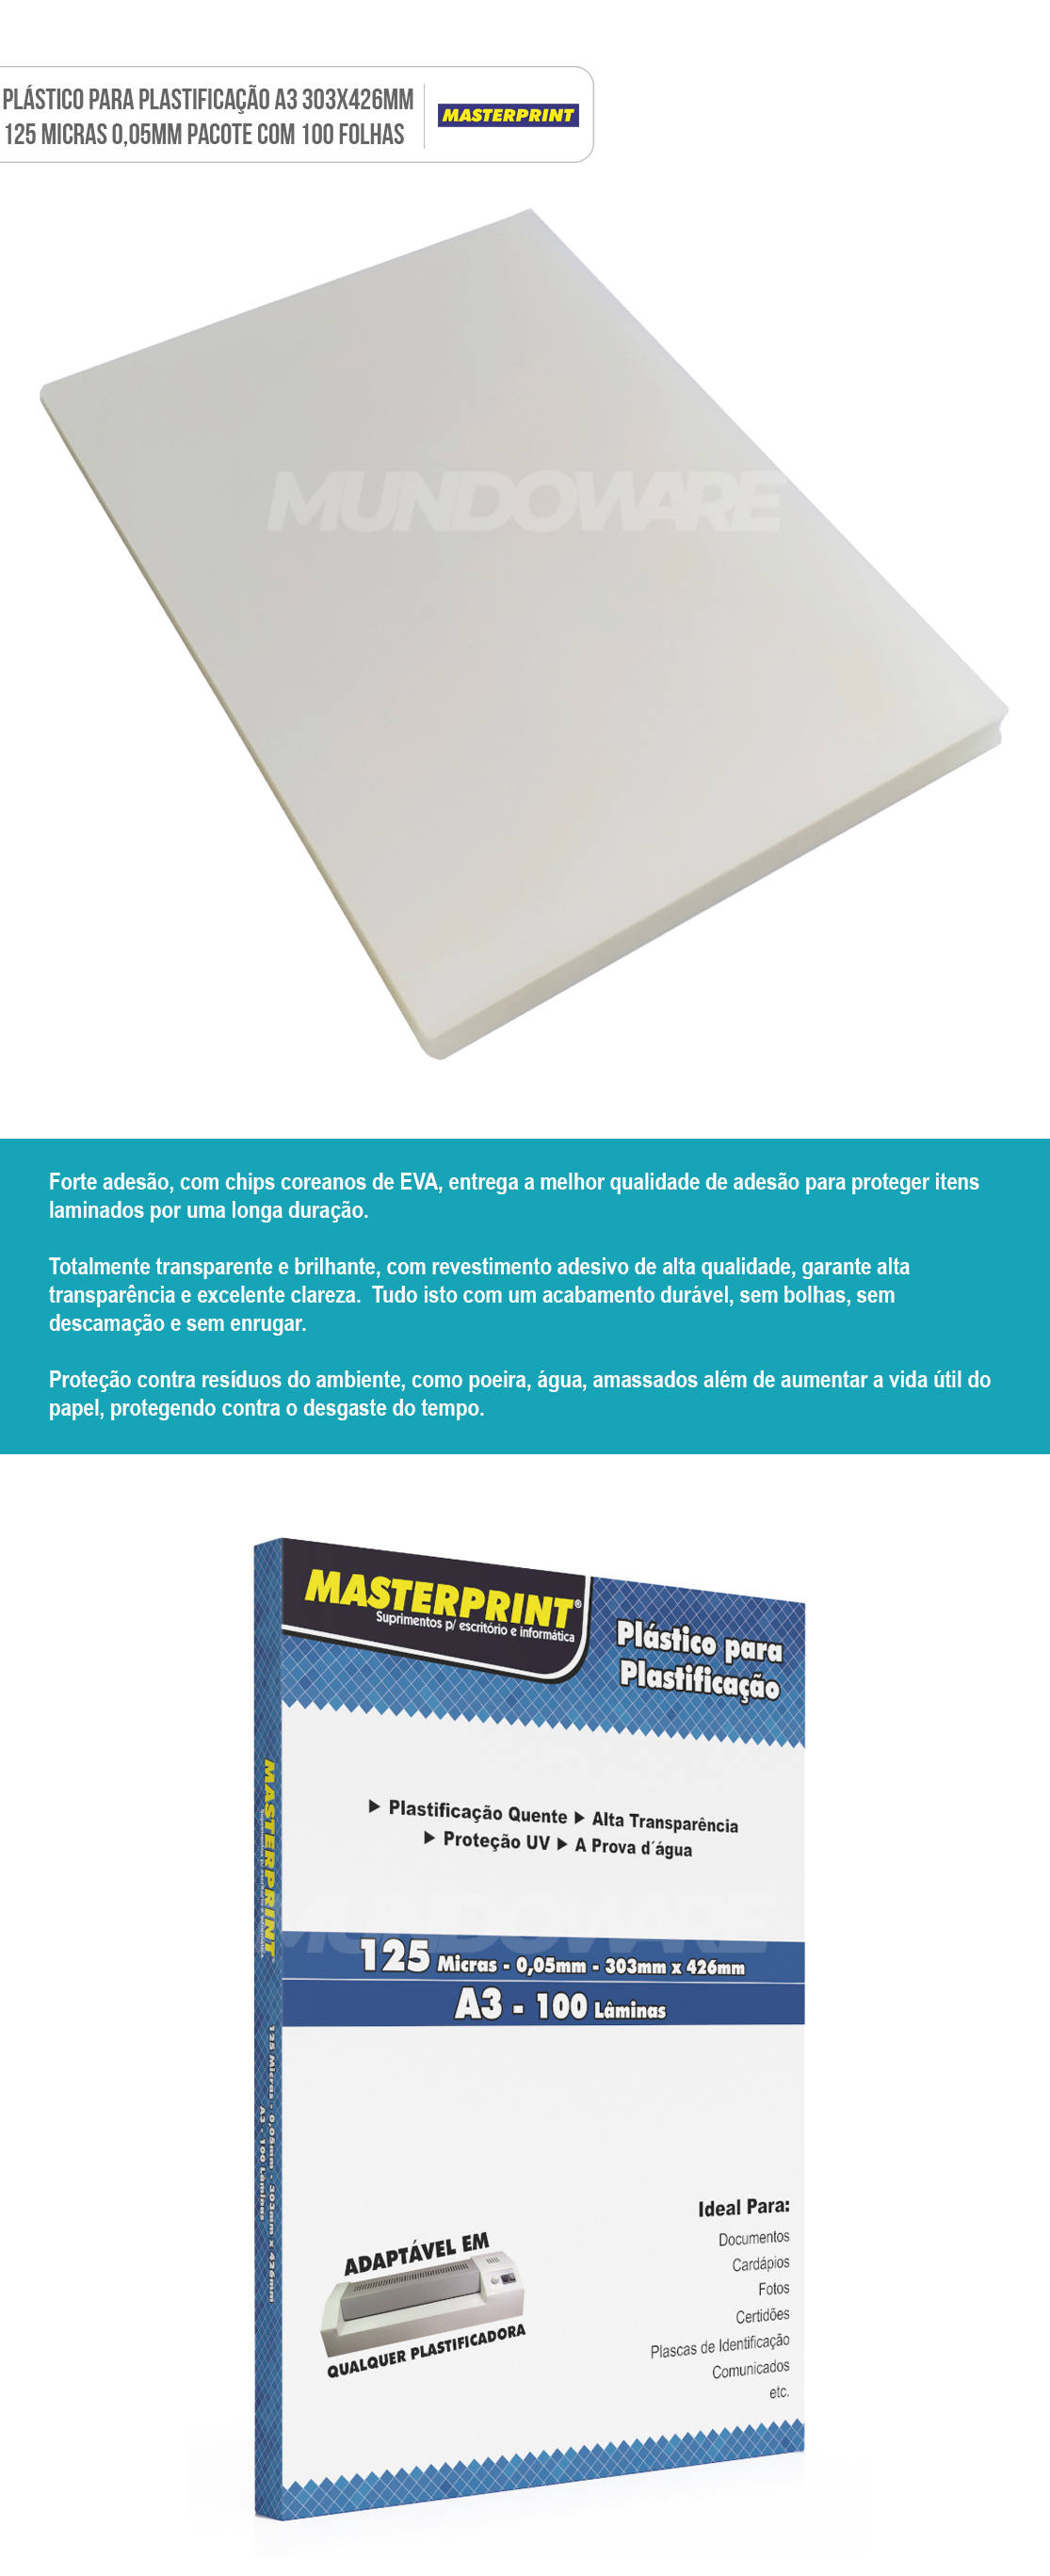 Plstico para Plastificao A3 303x426mm 125 micras 0,05mm Polaseal Masterprint Pacote com 100 folhas